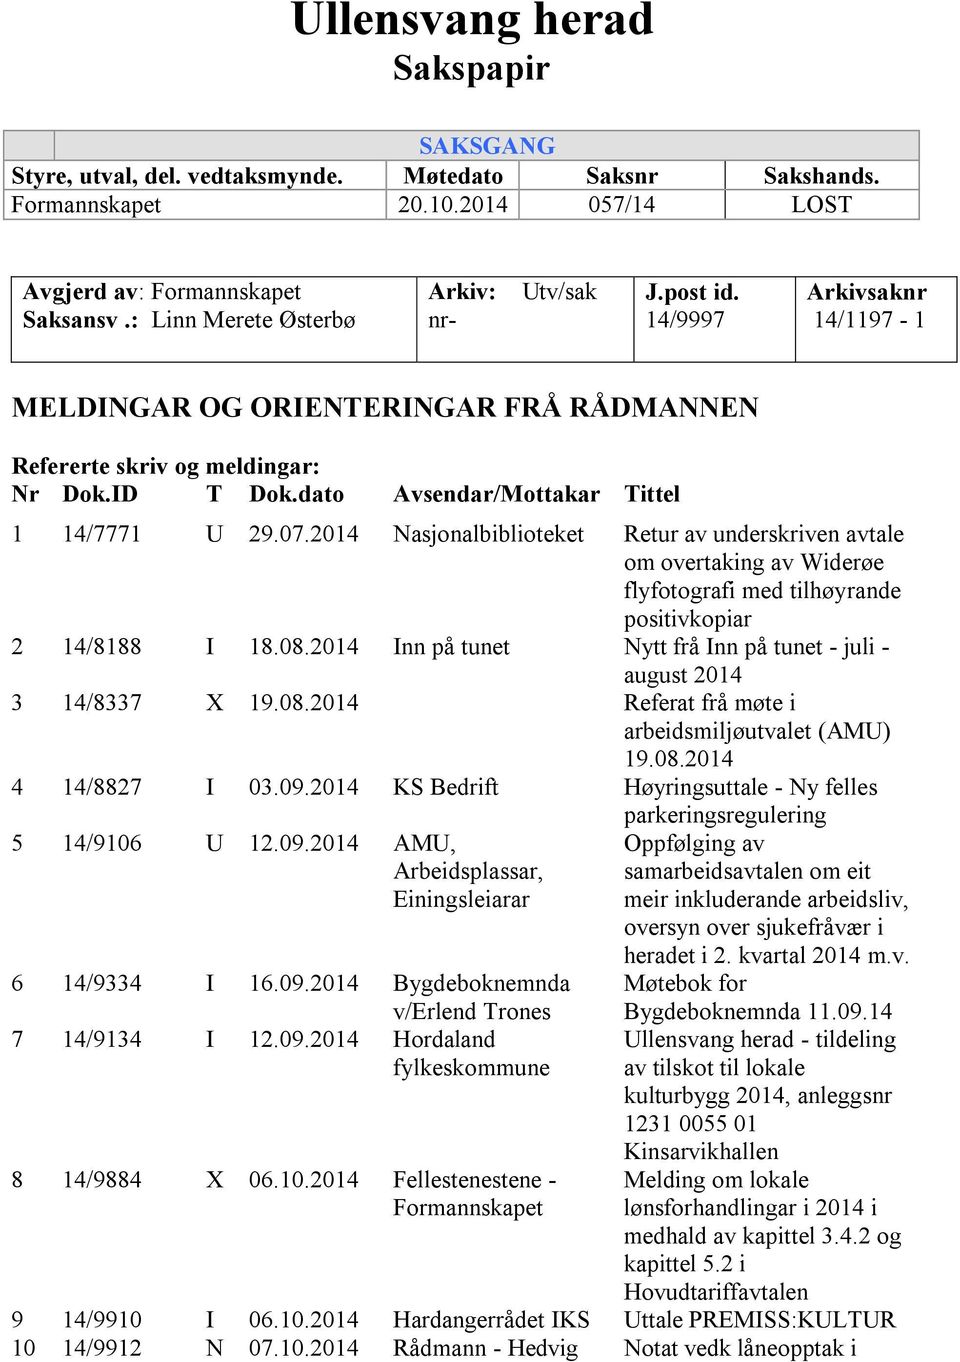 dato Avsendar/Mottakar Tittel 1 14/7771 U 29.07.2014 Nasjonalbiblioteket Retur av underskriven avtale om overtaking av Widerøe flyfotografi med tilhøyrande positivkopiar 2 14/8188 I 18.08.